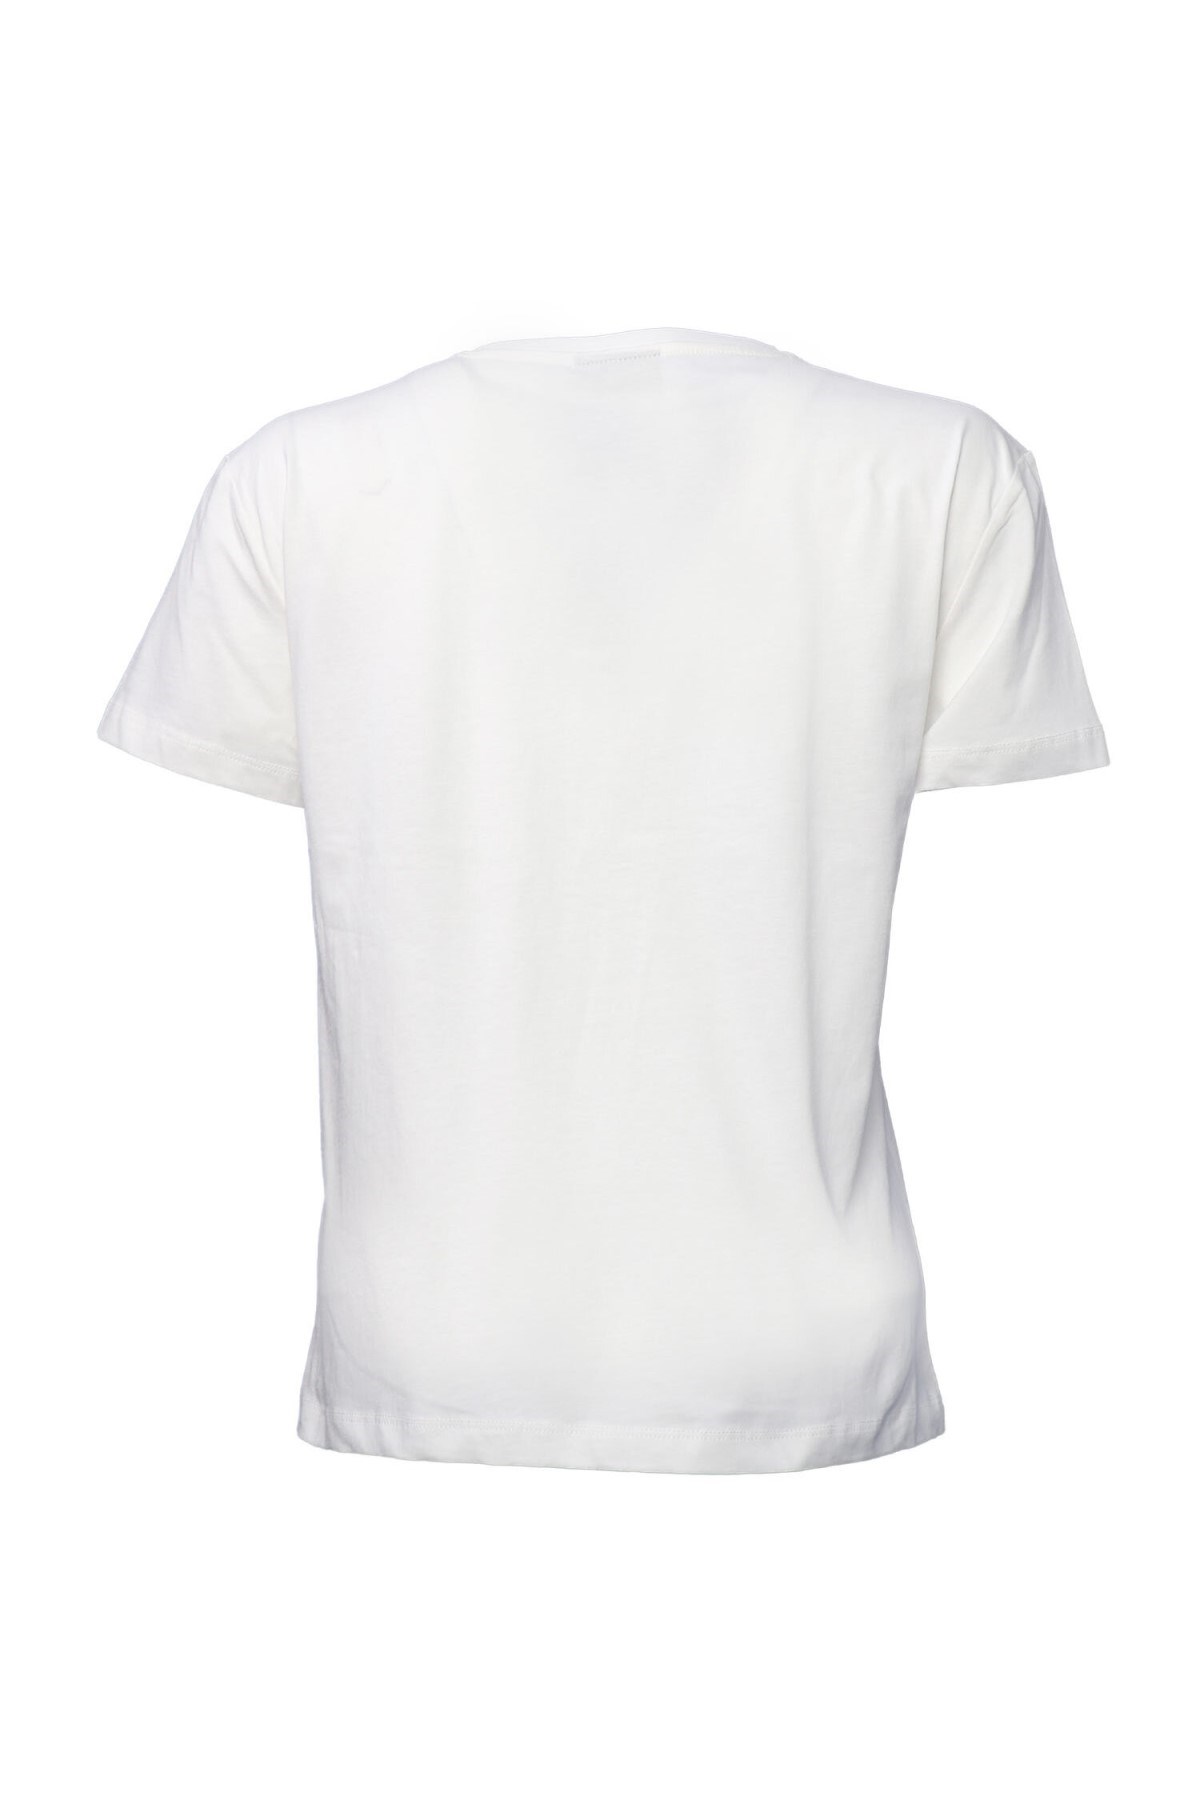 Hummel Kadın T-Shirt 911549-9003 Off Whıte